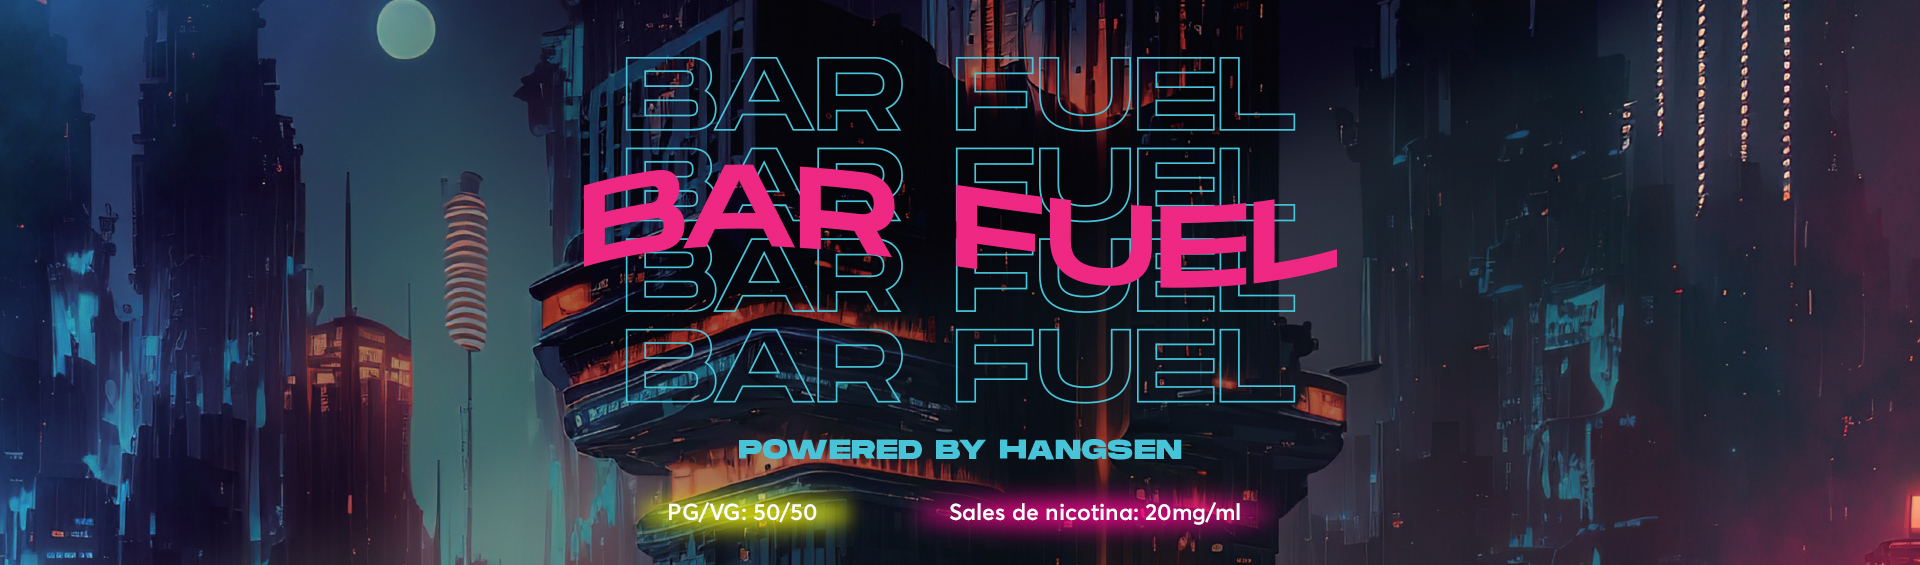 banner-bar-fuel-Vapori